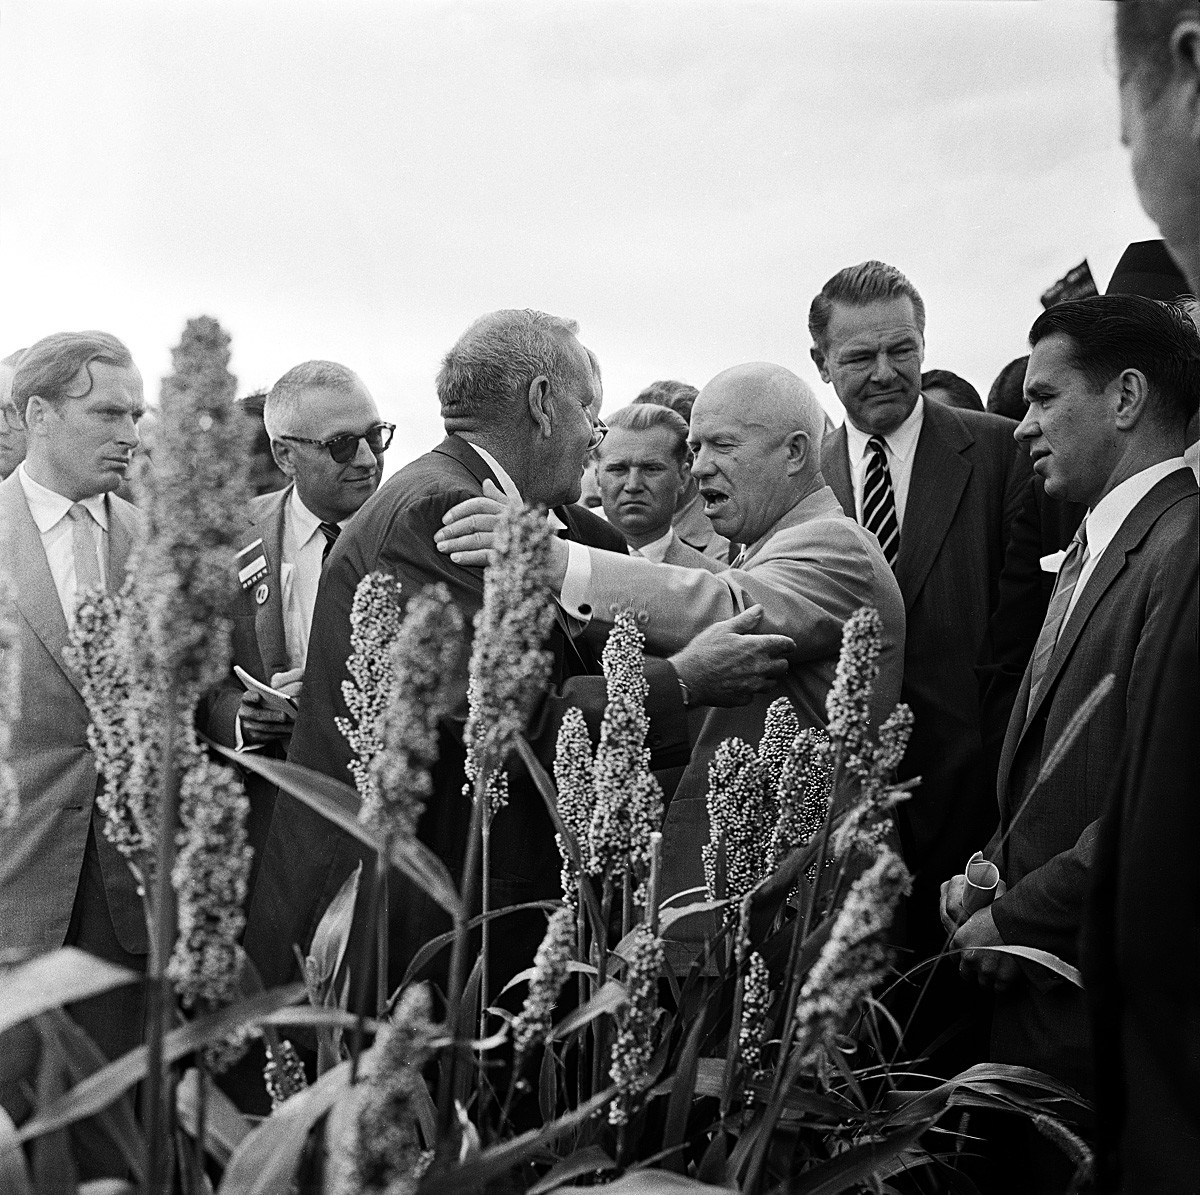 Nikita Khrouchtchev et son hôte, Roswell Garst, discutent dans un champ de sorgho de l'Iowa, le 23 septembre 1959.